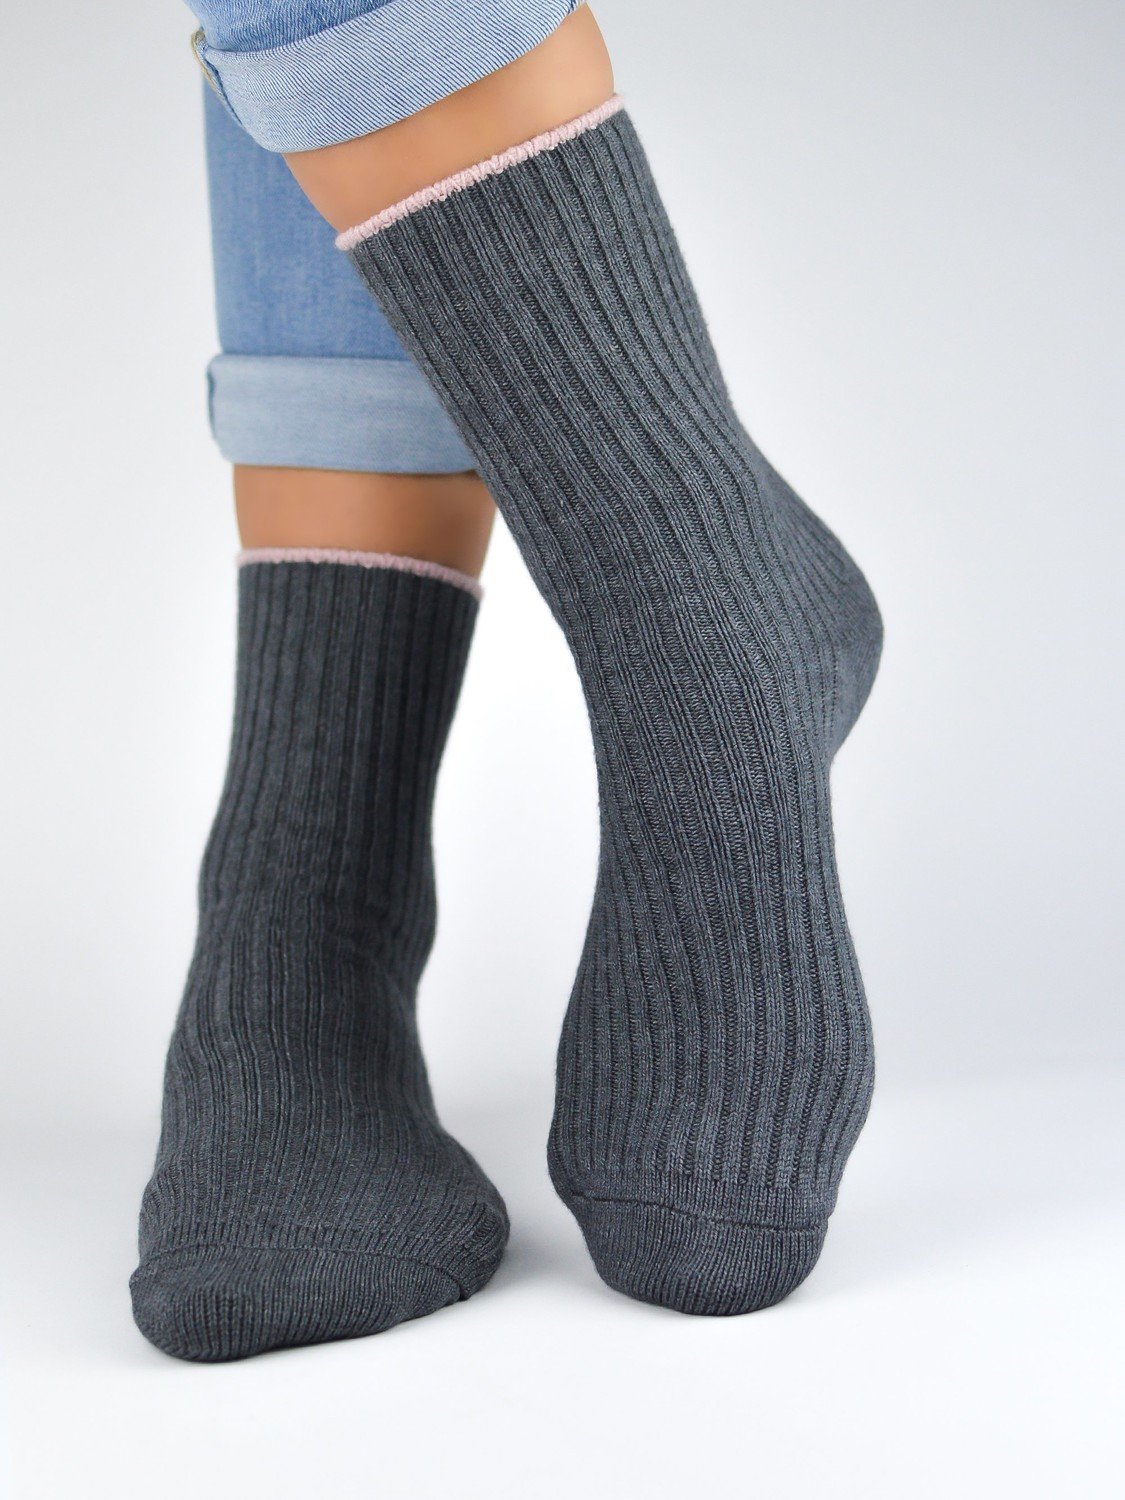 NOVITI Woman's Socks SB029-W-03